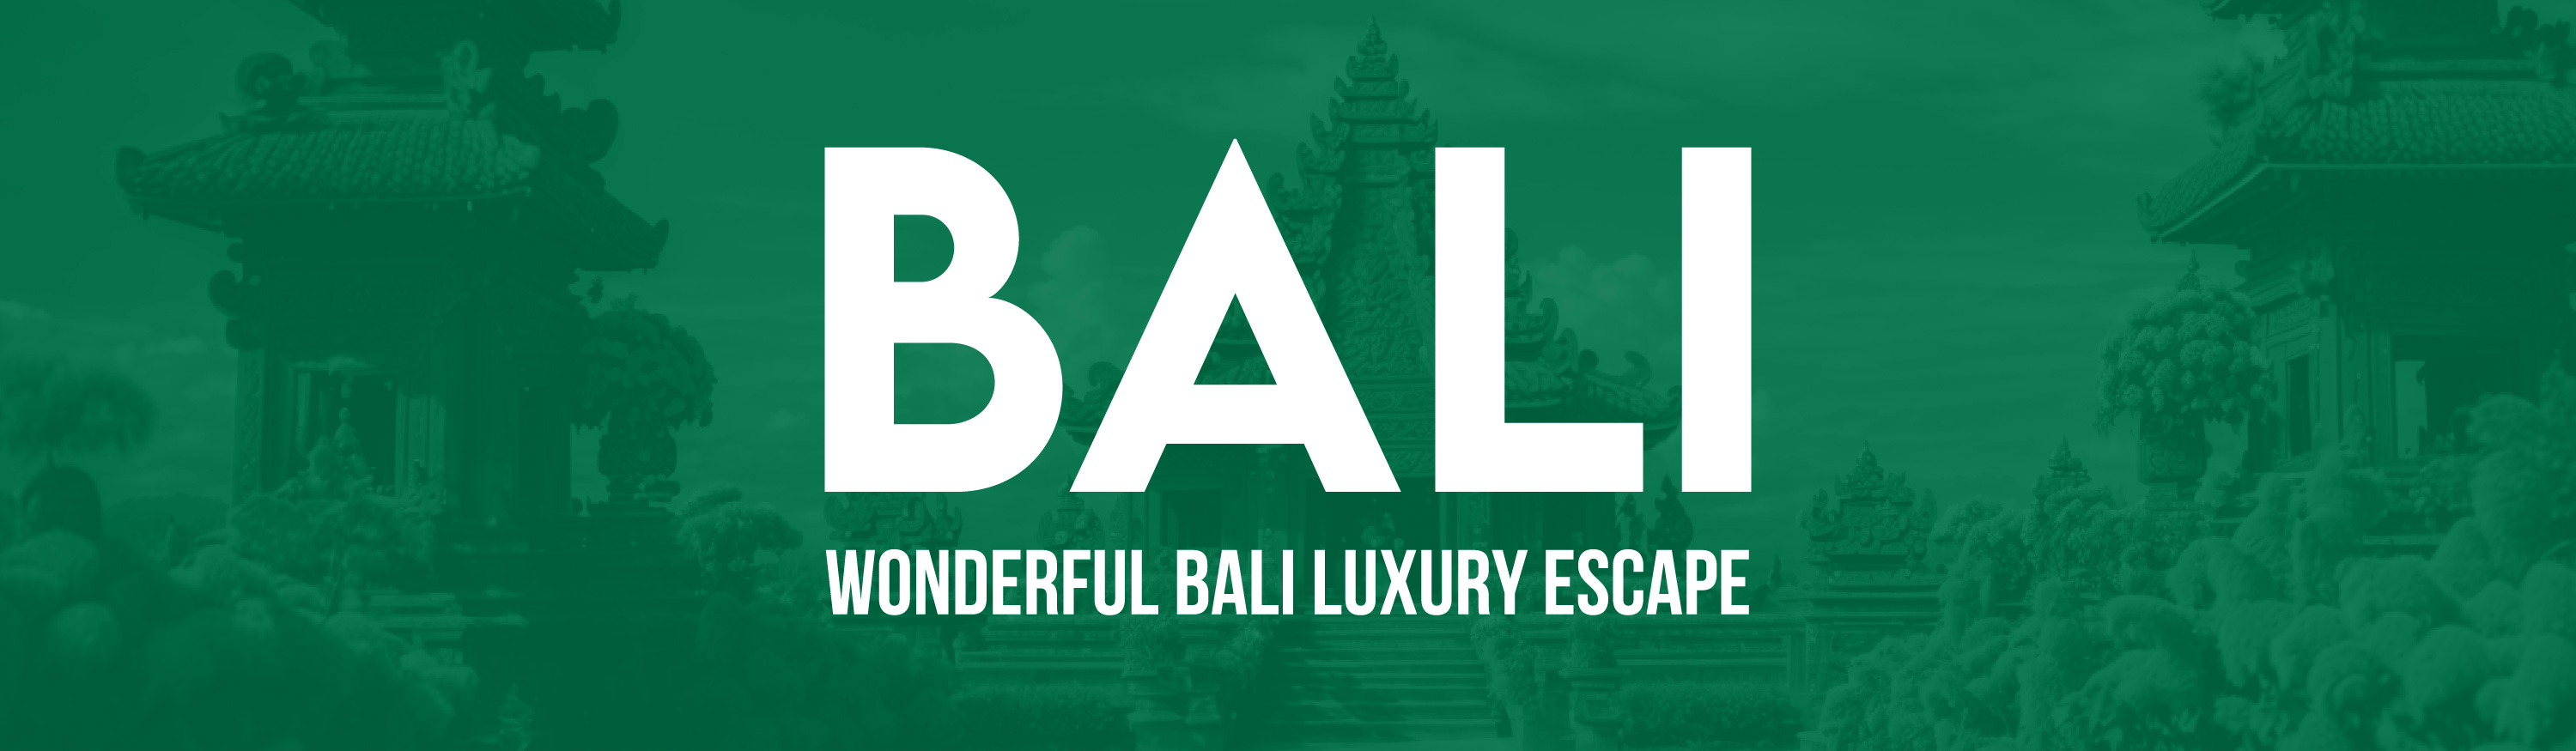 Bali-wonderful-bali-luxury-escape-logo